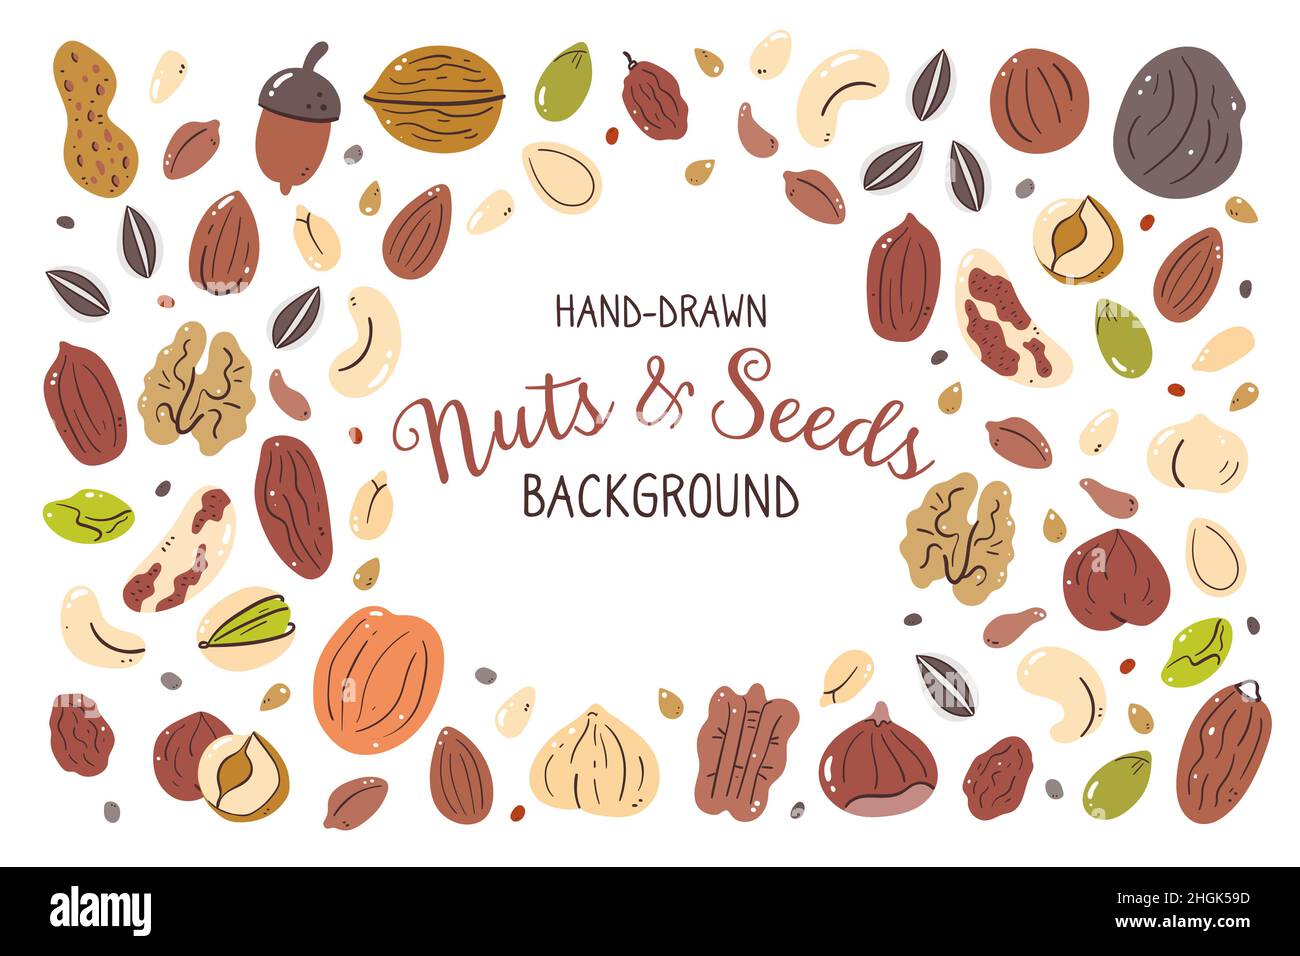 Nüsse und Samen Hintergrund. Abbildung: Zutaten für das Kochen. Isolierte, farbige, handgezeichnete Symbole auf weißem Hintergrund. Vektorgrafik. Stock Vektor